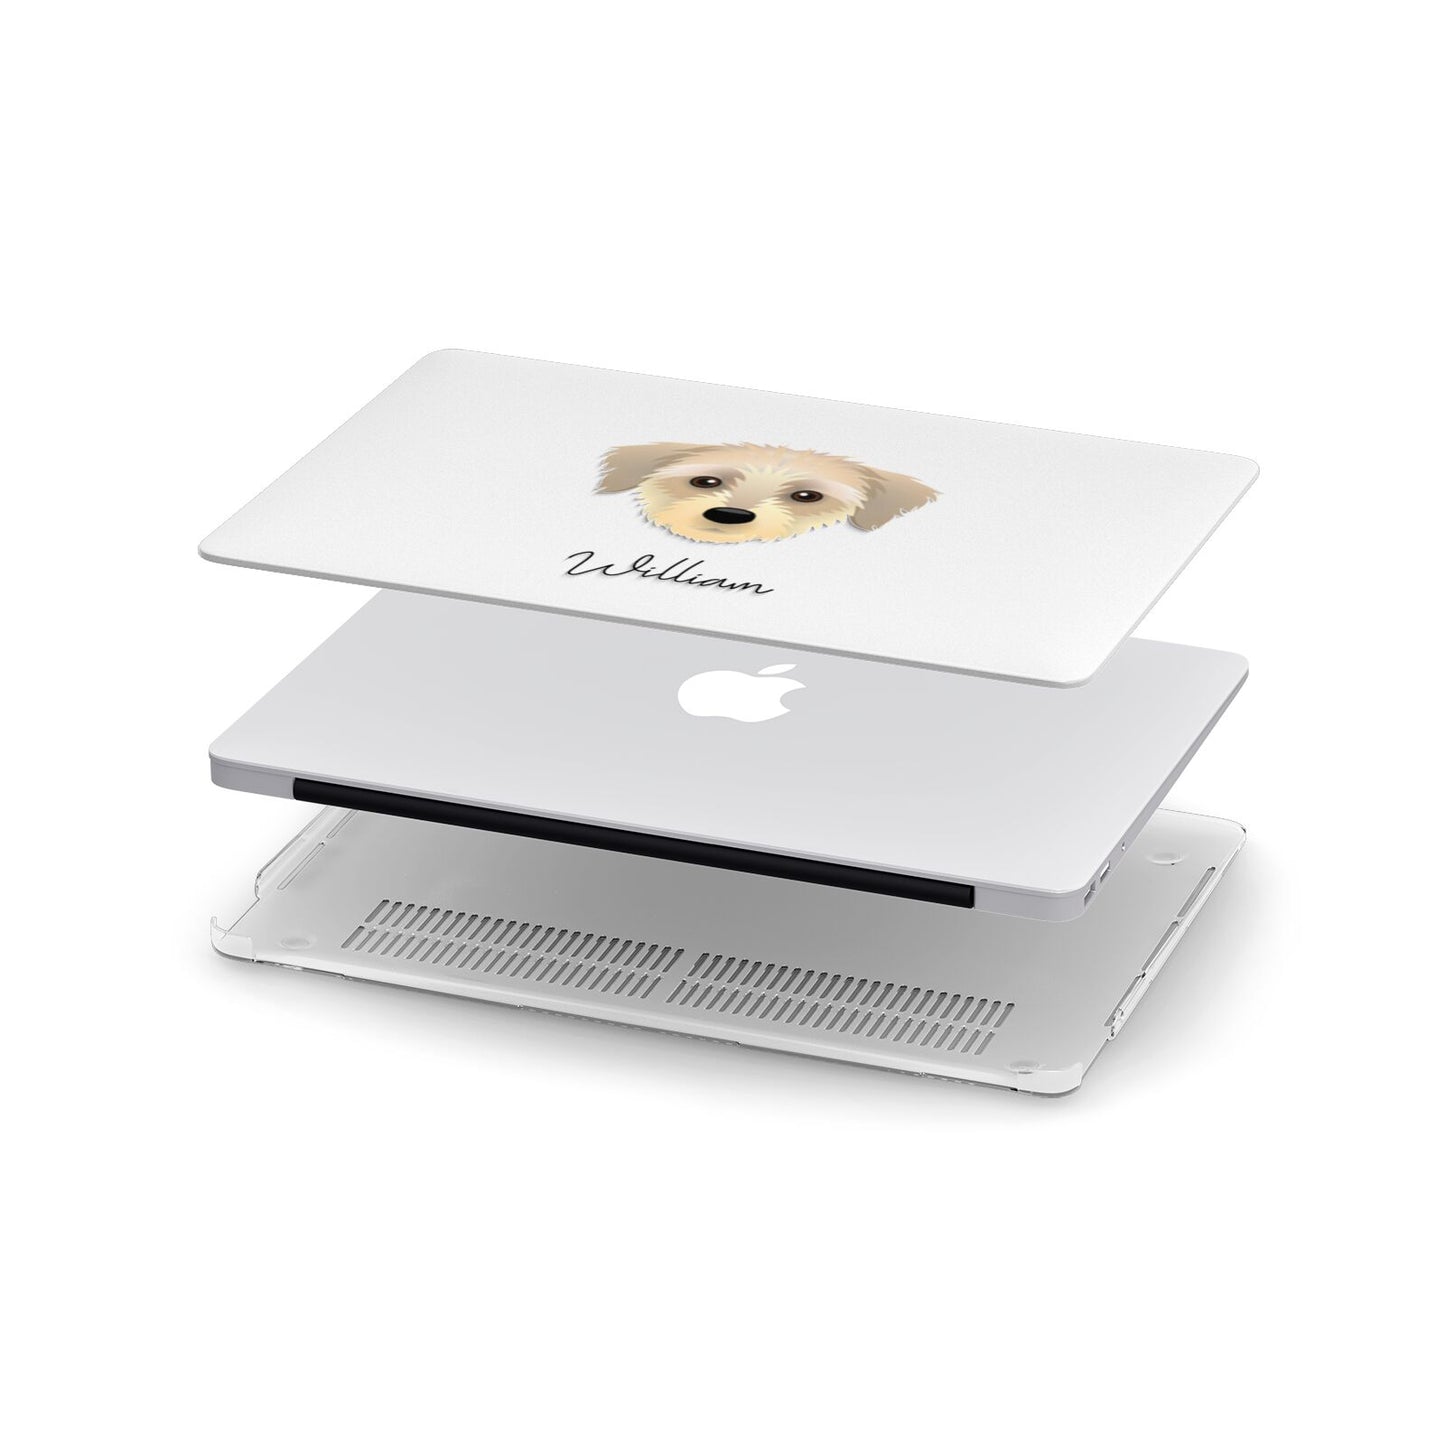 Dorkie Personalised Apple MacBook Case in Detail